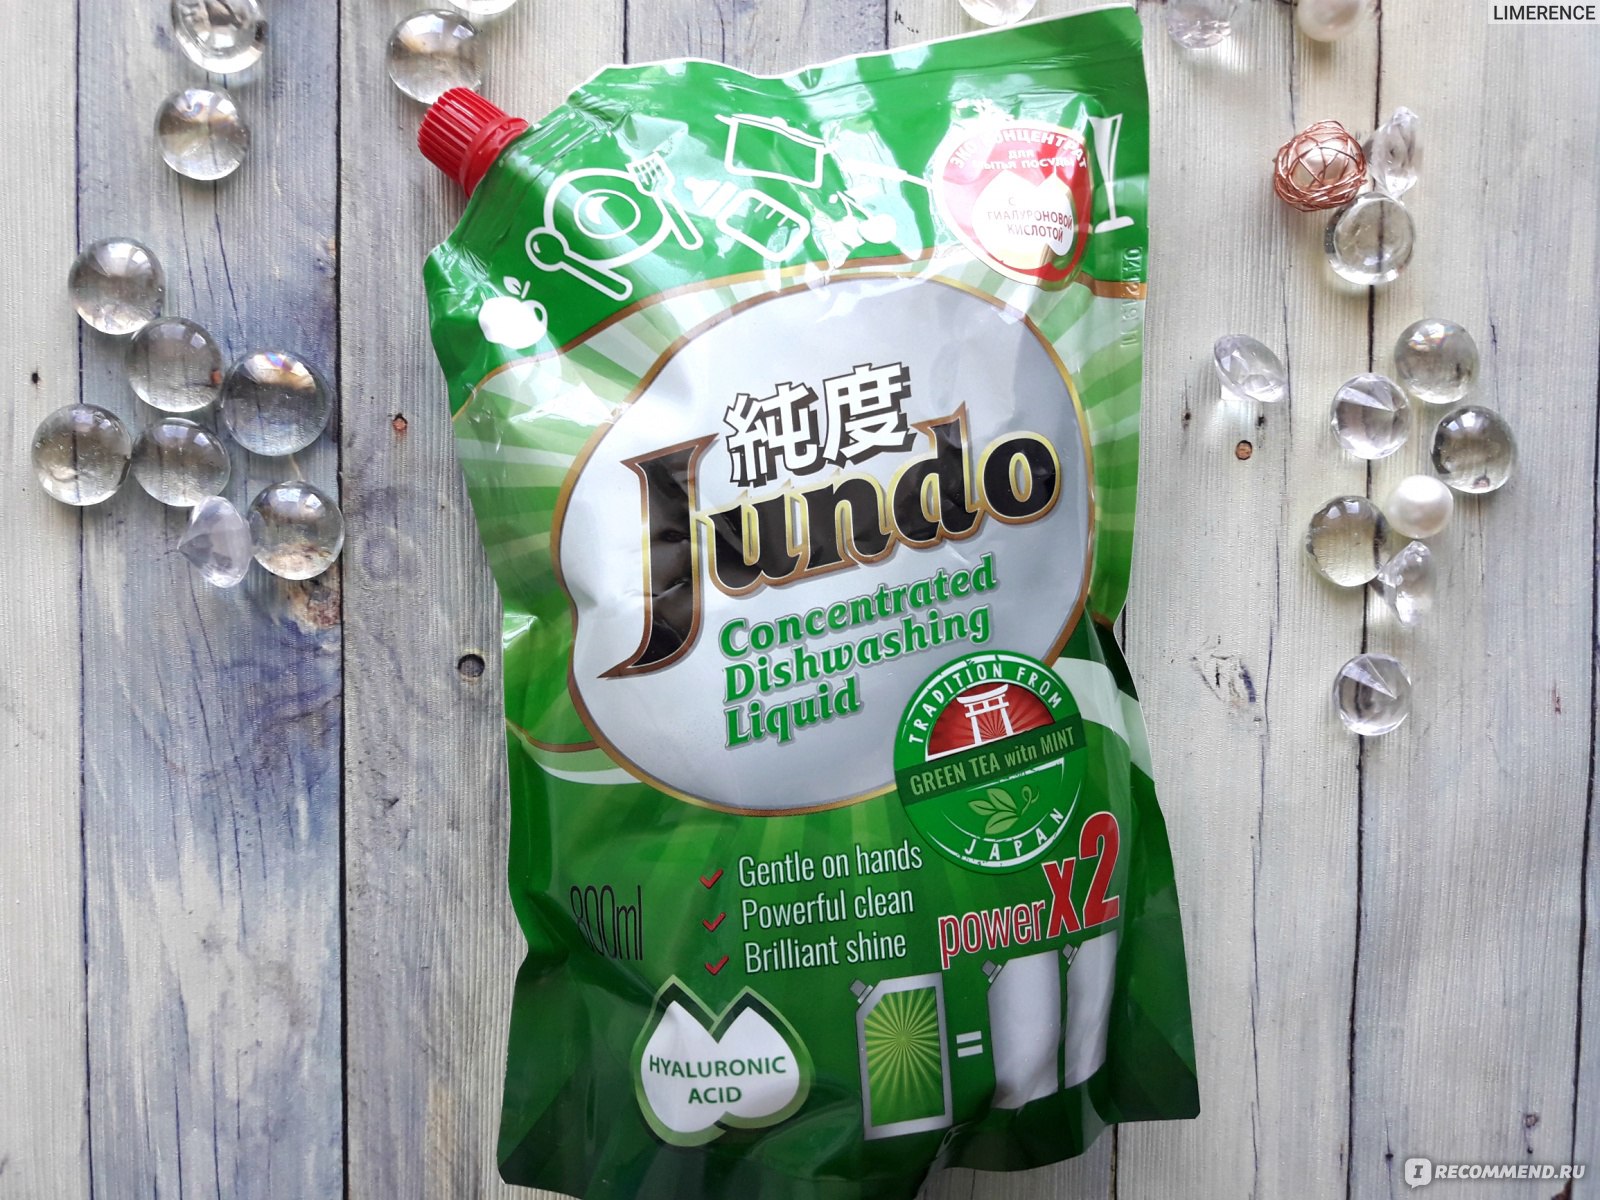 Гель для мытья посуды Jundo Green tea with Mint с гиалуроновой кислотой концентрированный фото